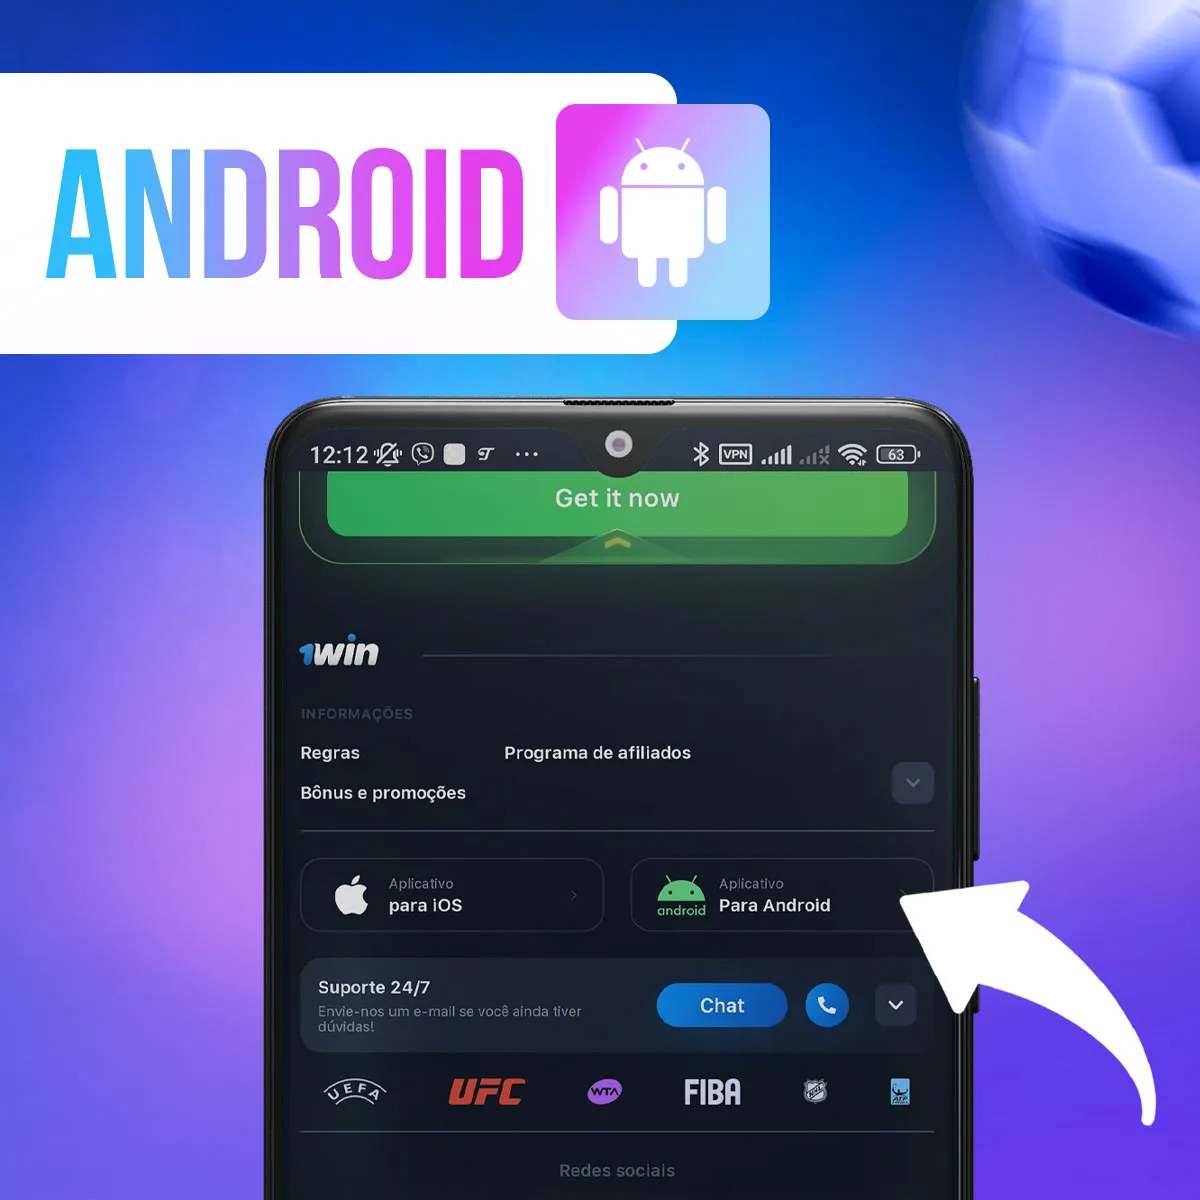 Revisão da instalação do aplicativo para Android da casa de apostas 1win no Brasil